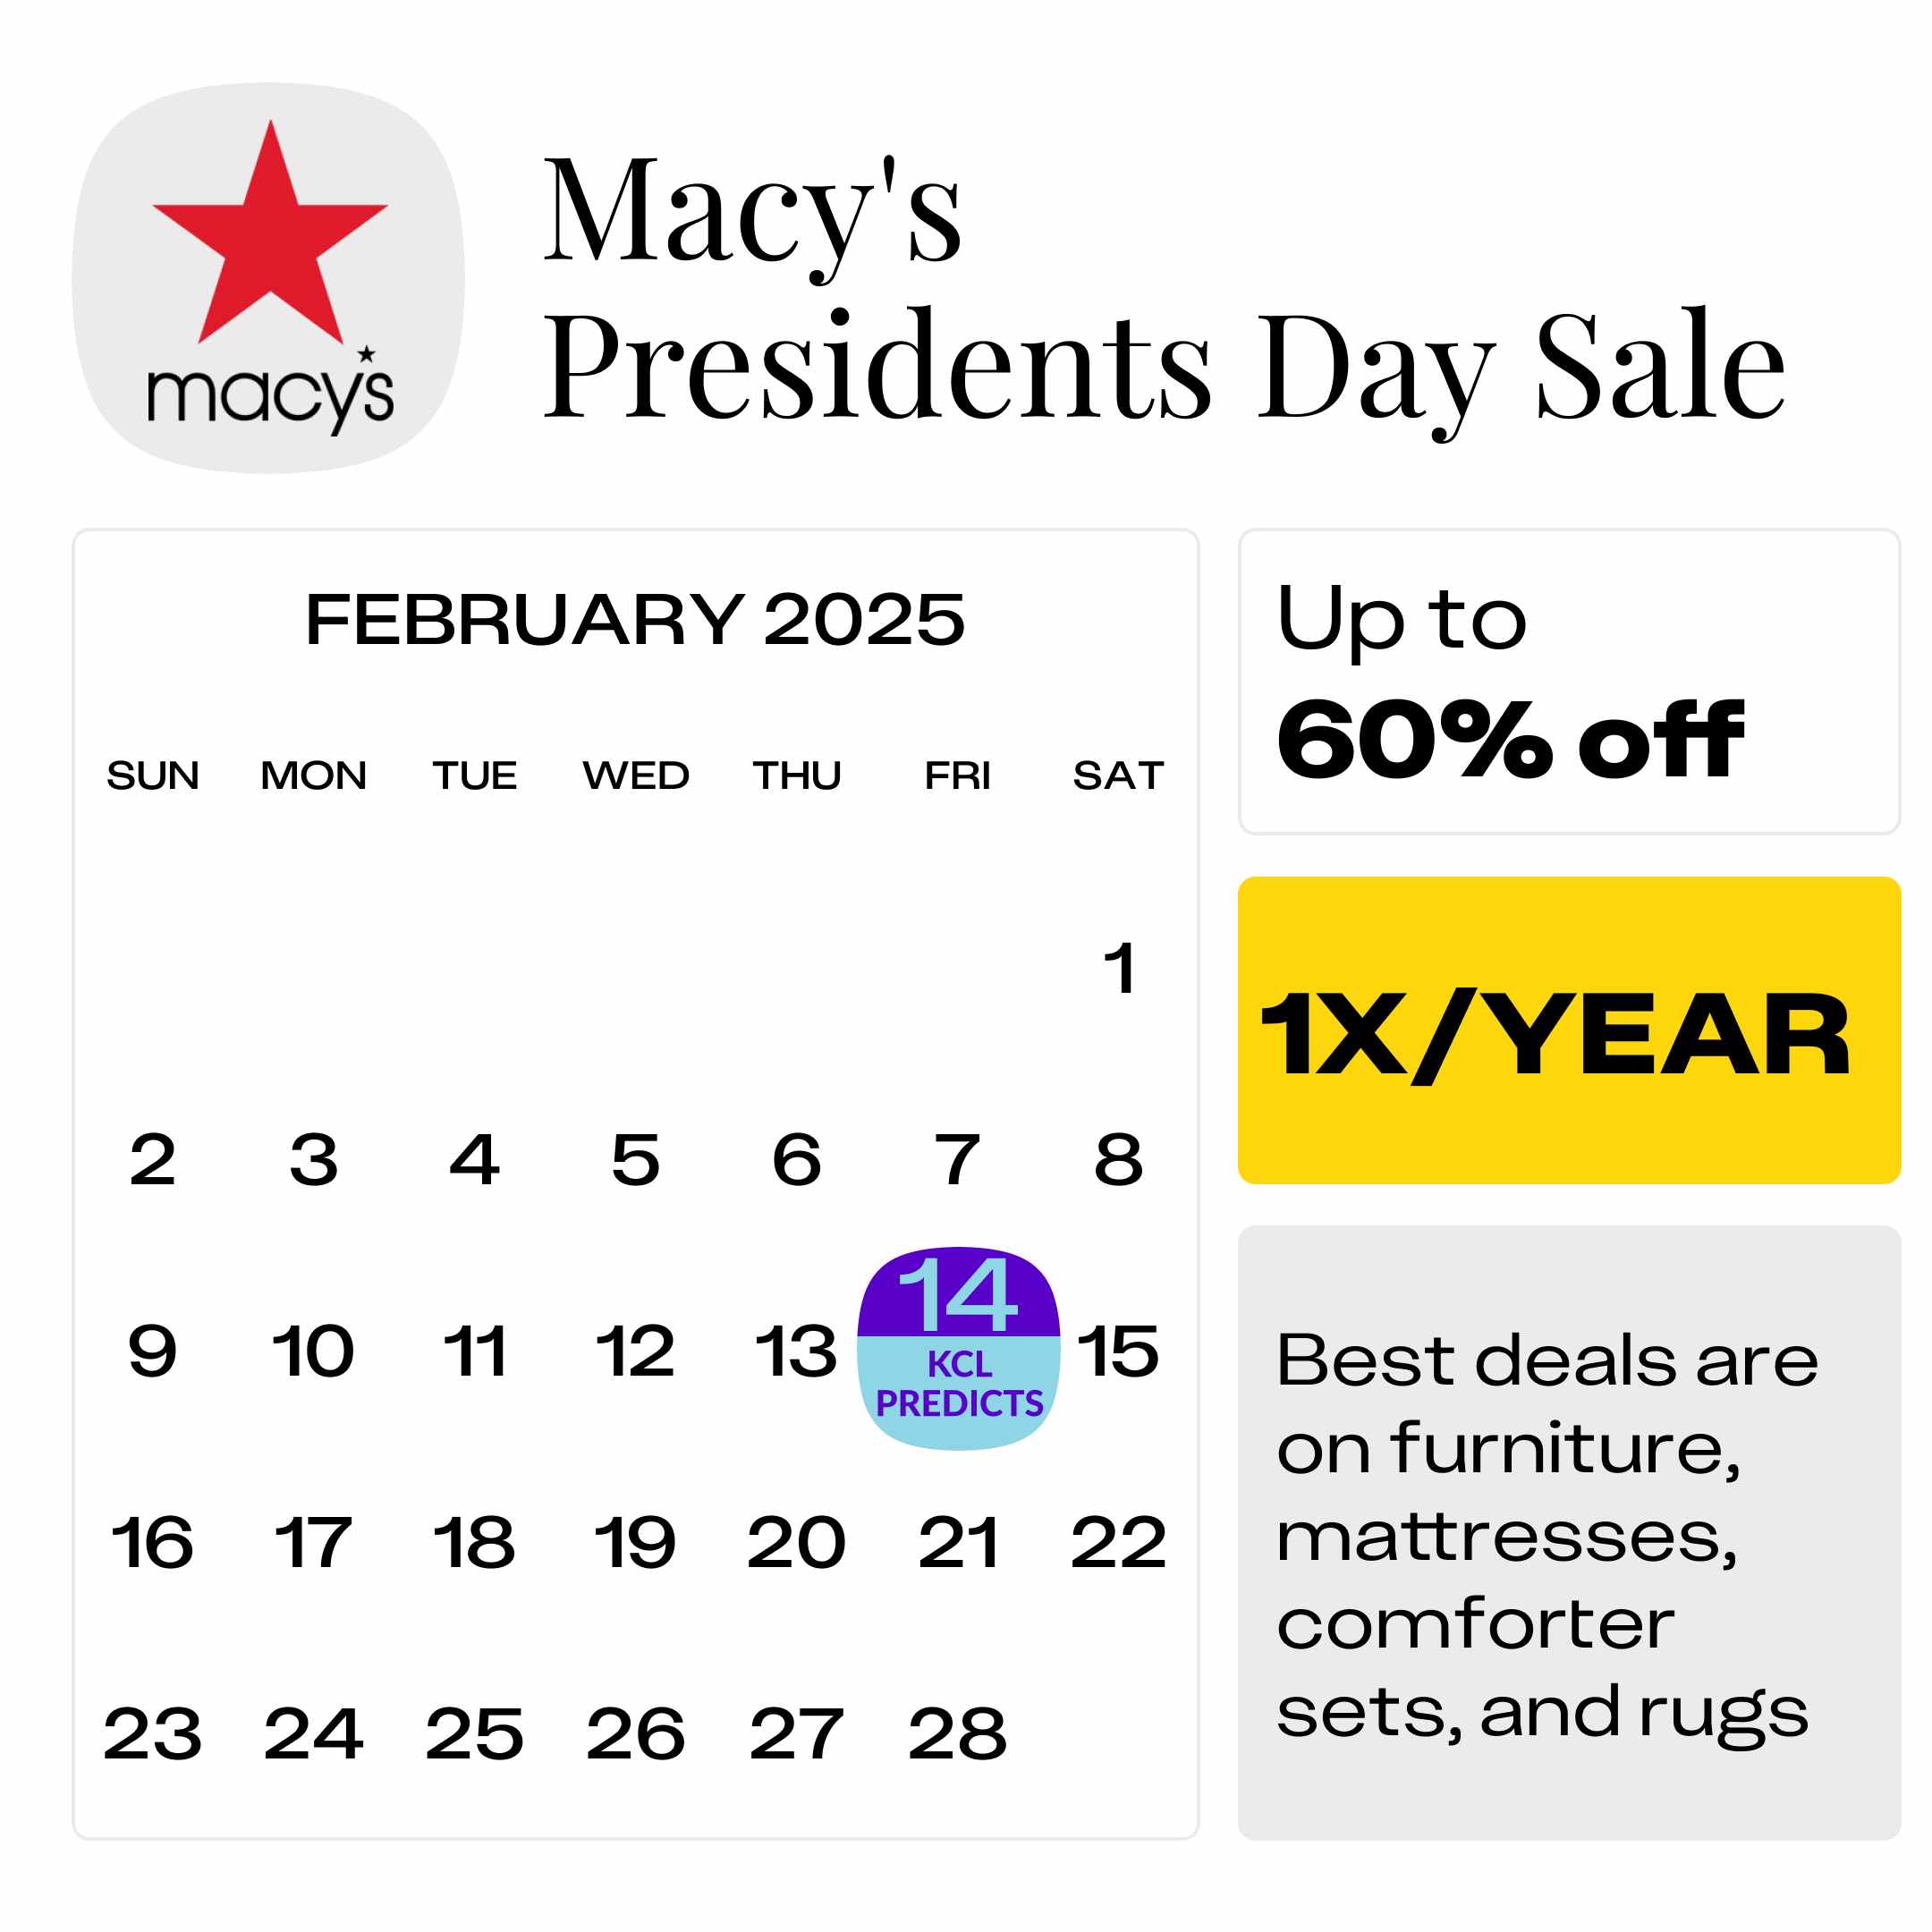 Macys-Presidents-Day-Sale (1)